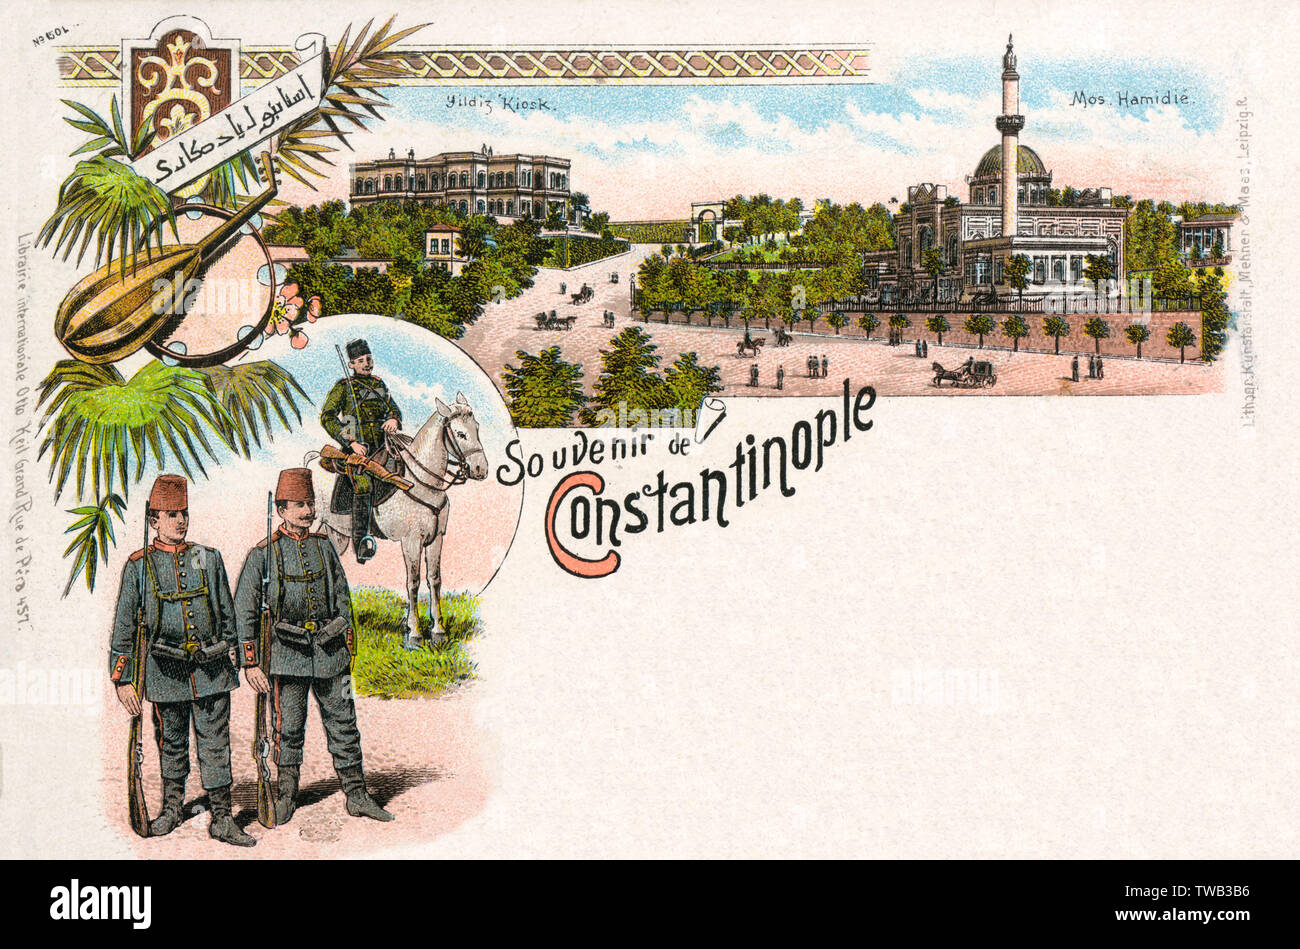 Carte postale avec des scènes d'Istanbul, Turquie Banque D'Images